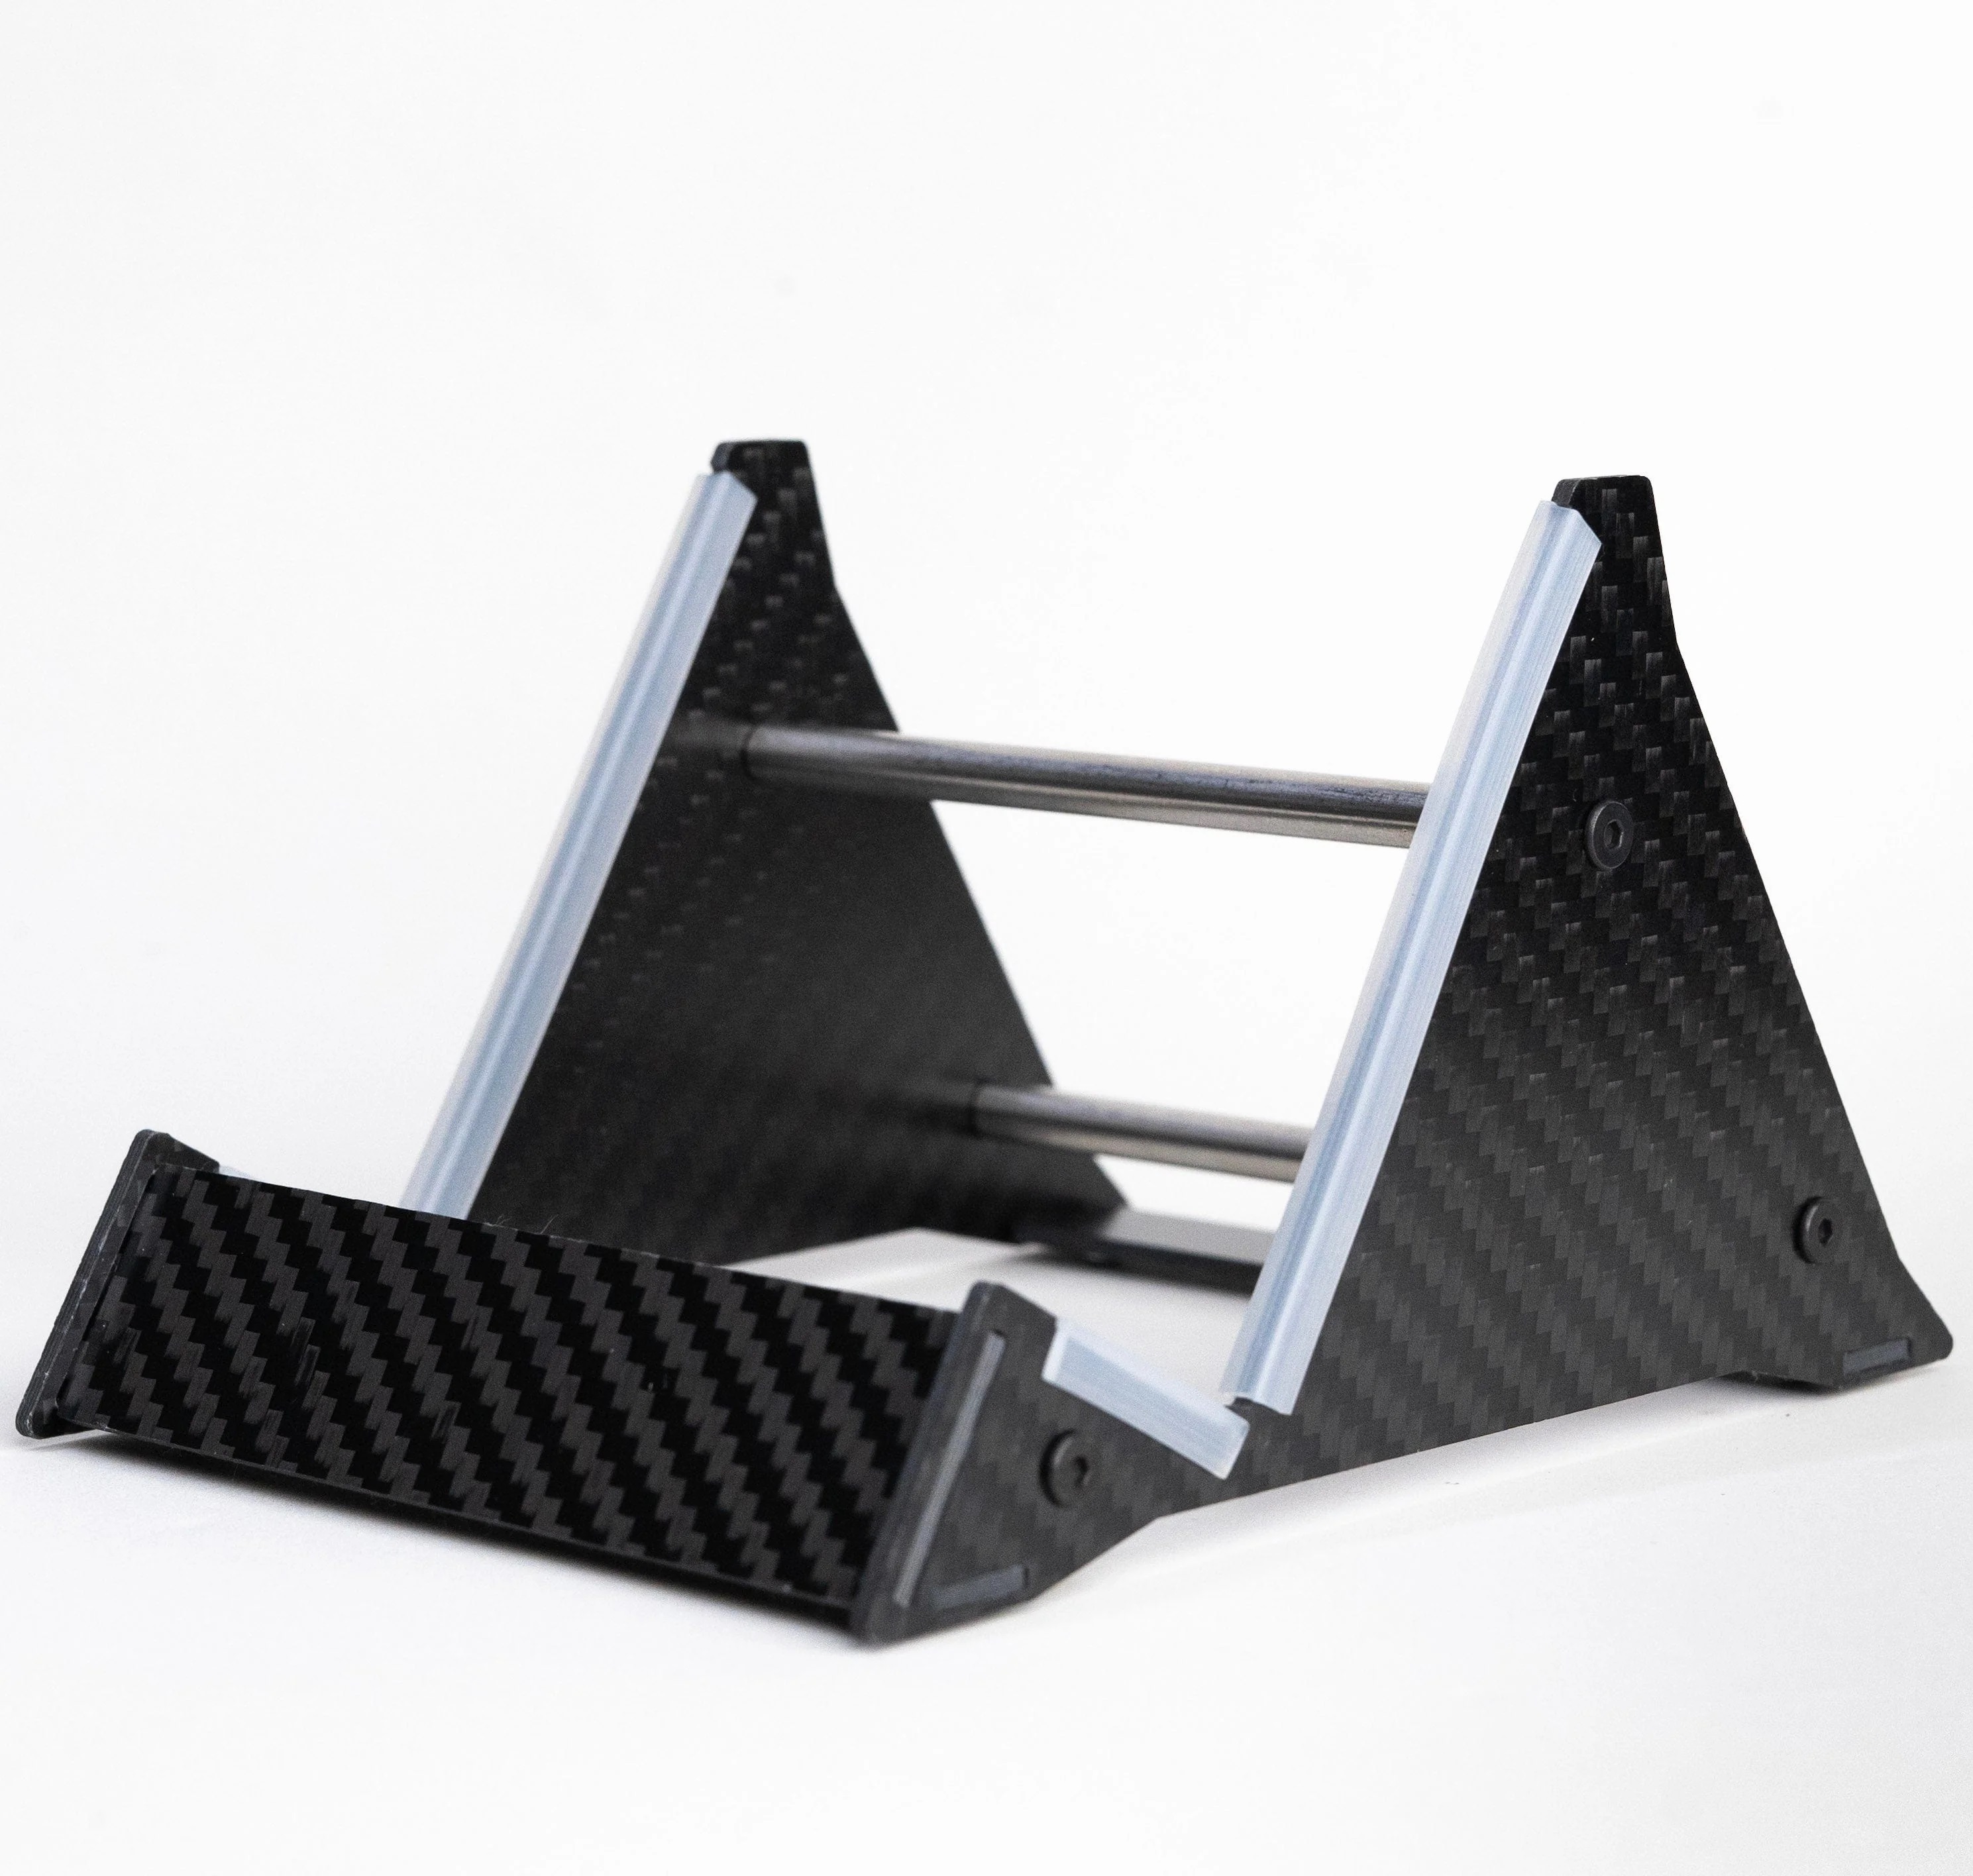 Premium Carbon Fiber Laptop Stand for Enhanced Ergonomics